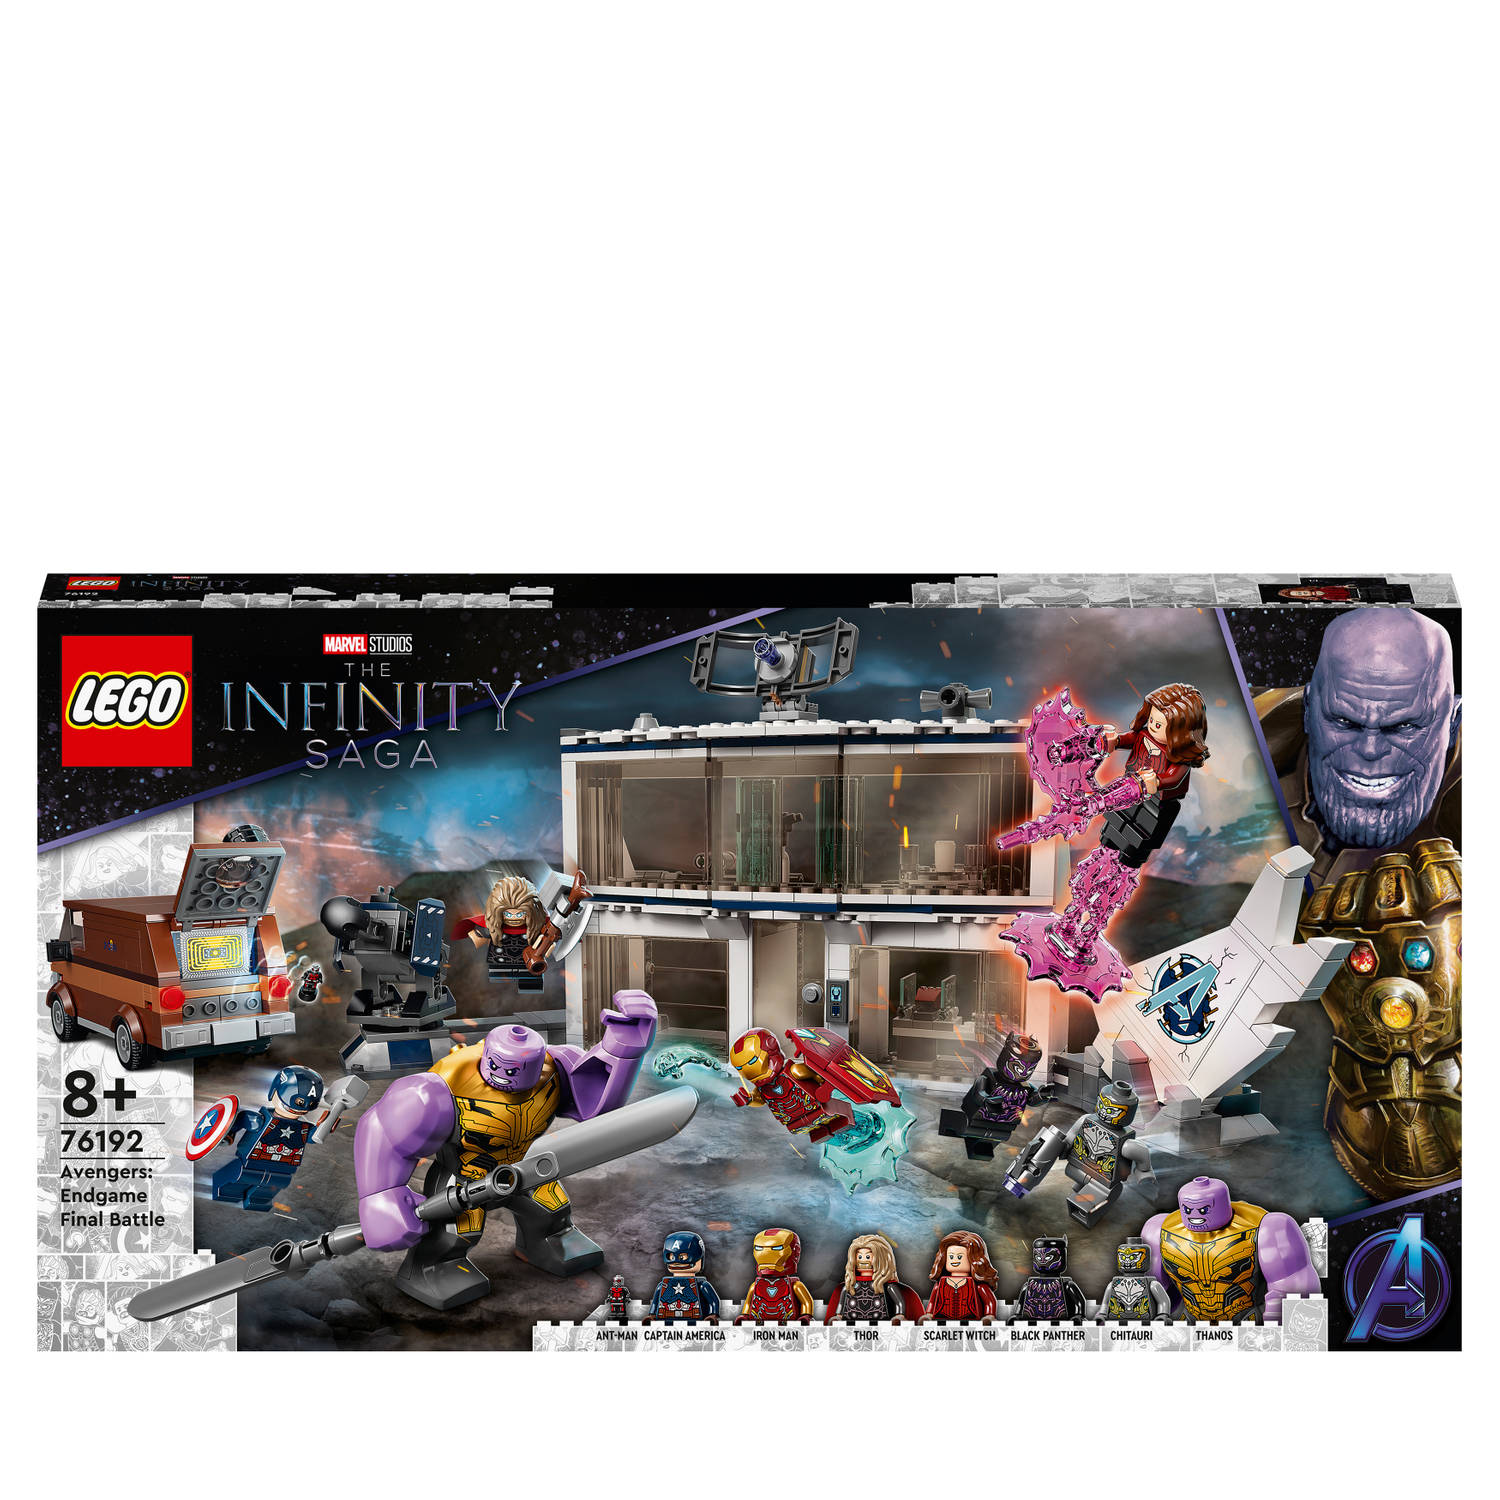 LEGO Marvel Super Heroes Marvel Avengers: Endgame Final Battle Set 76192